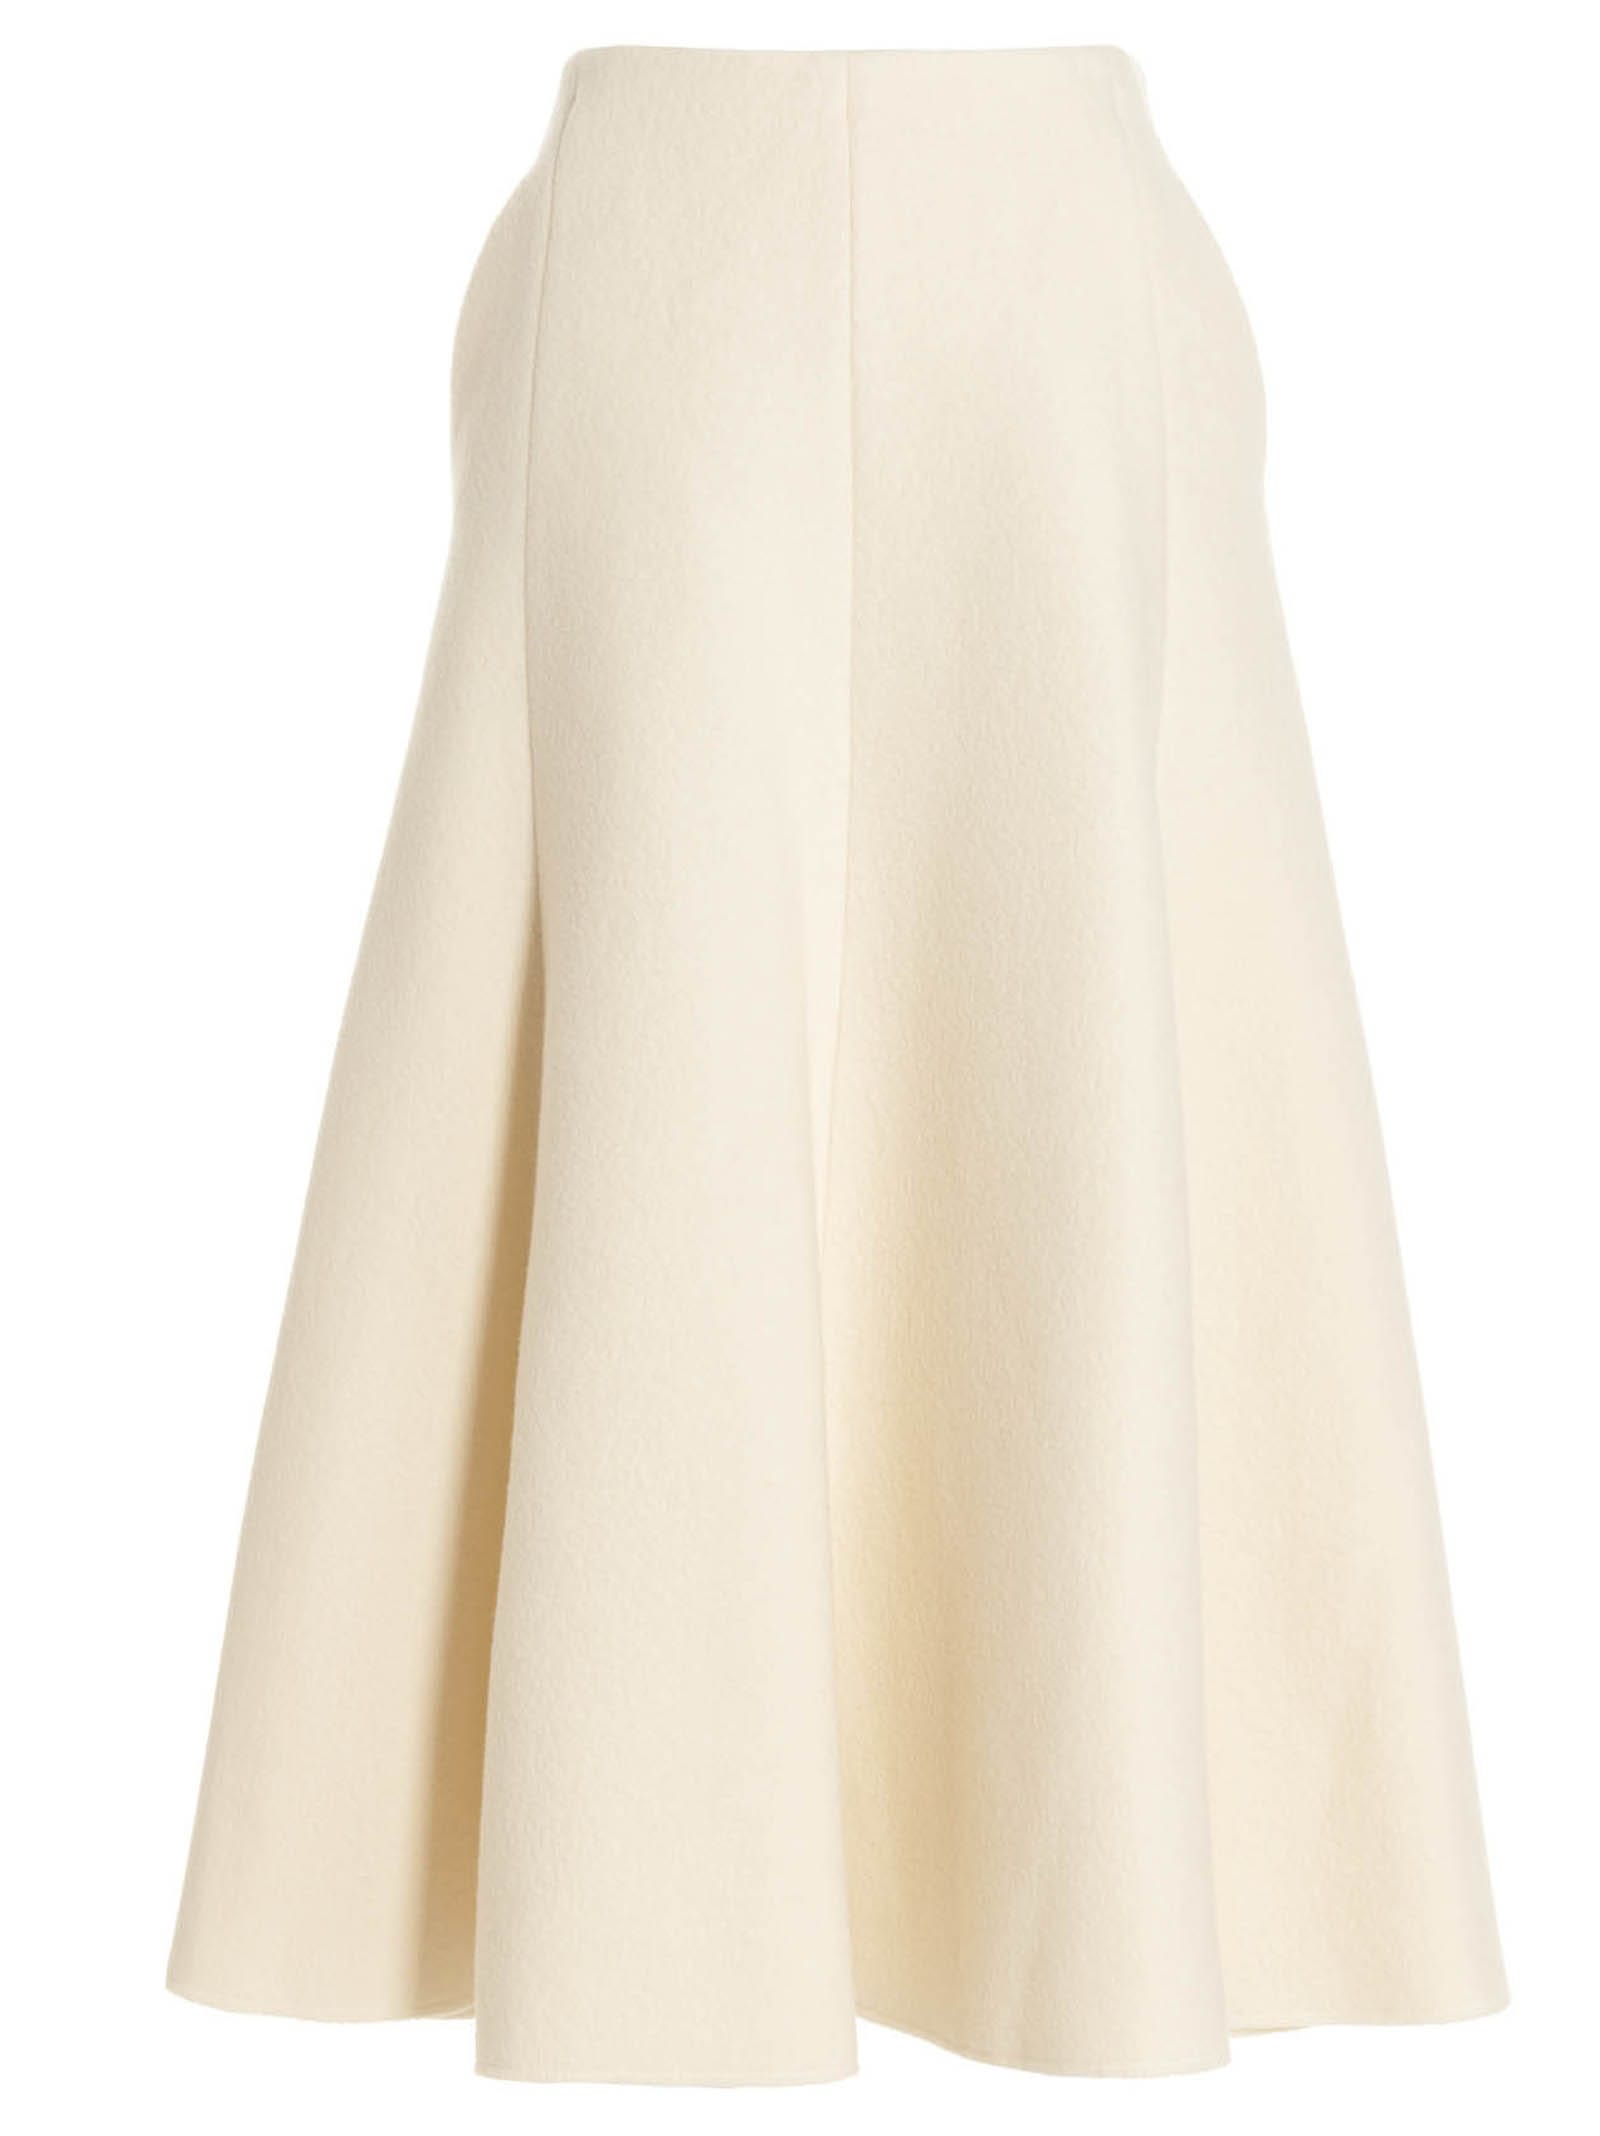 gabriela hearst maureen skirt